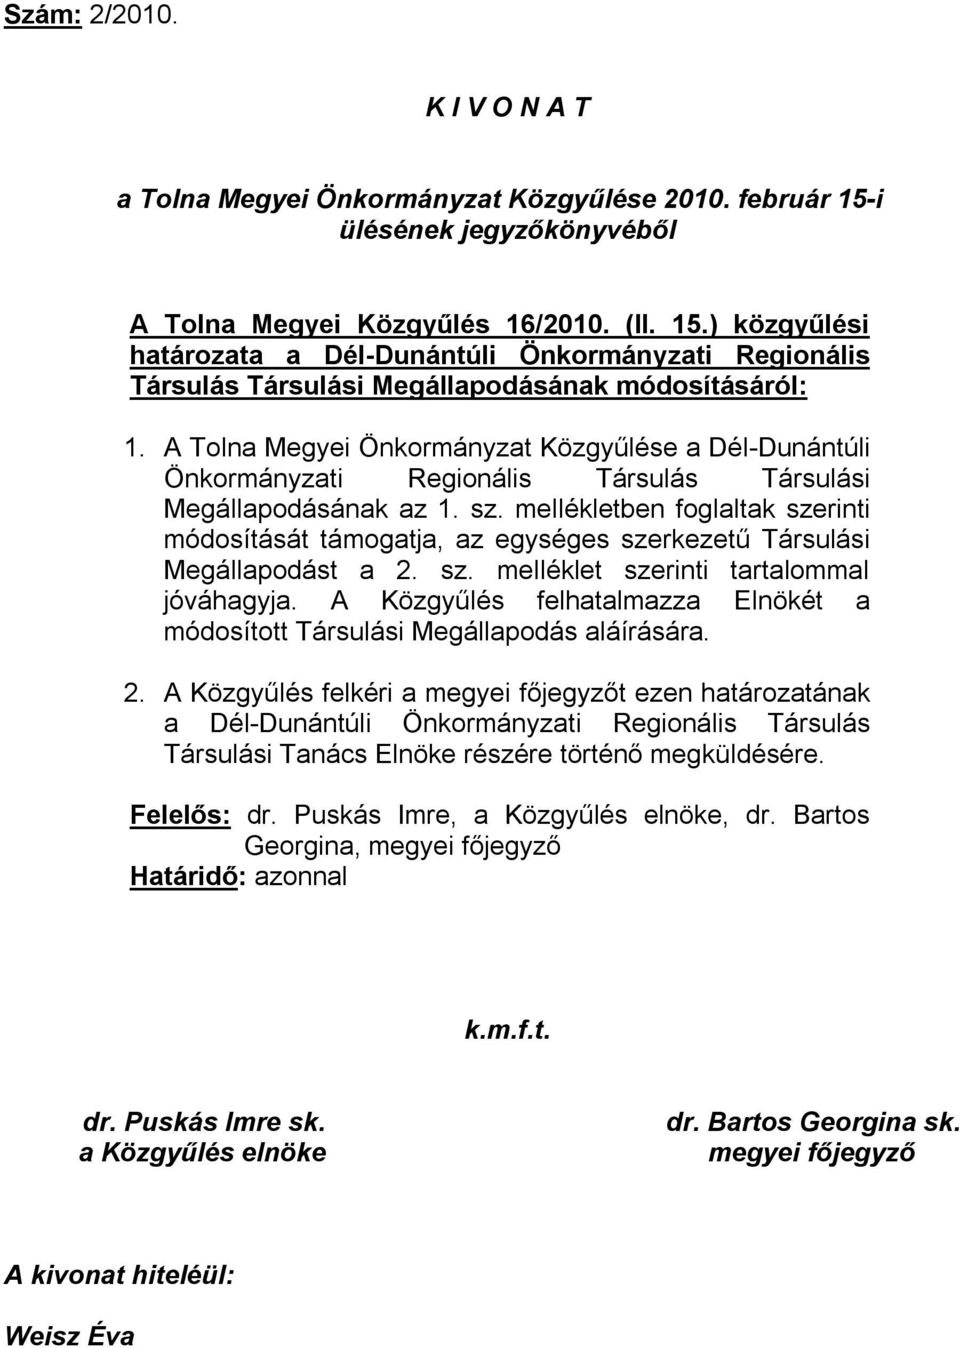 A Tolna Megyei Önkormányzat Közgyűlése a Dél-Dunántúli Önkormányzati Regionális Társulás Társulási Megállapodásának az 1. sz.